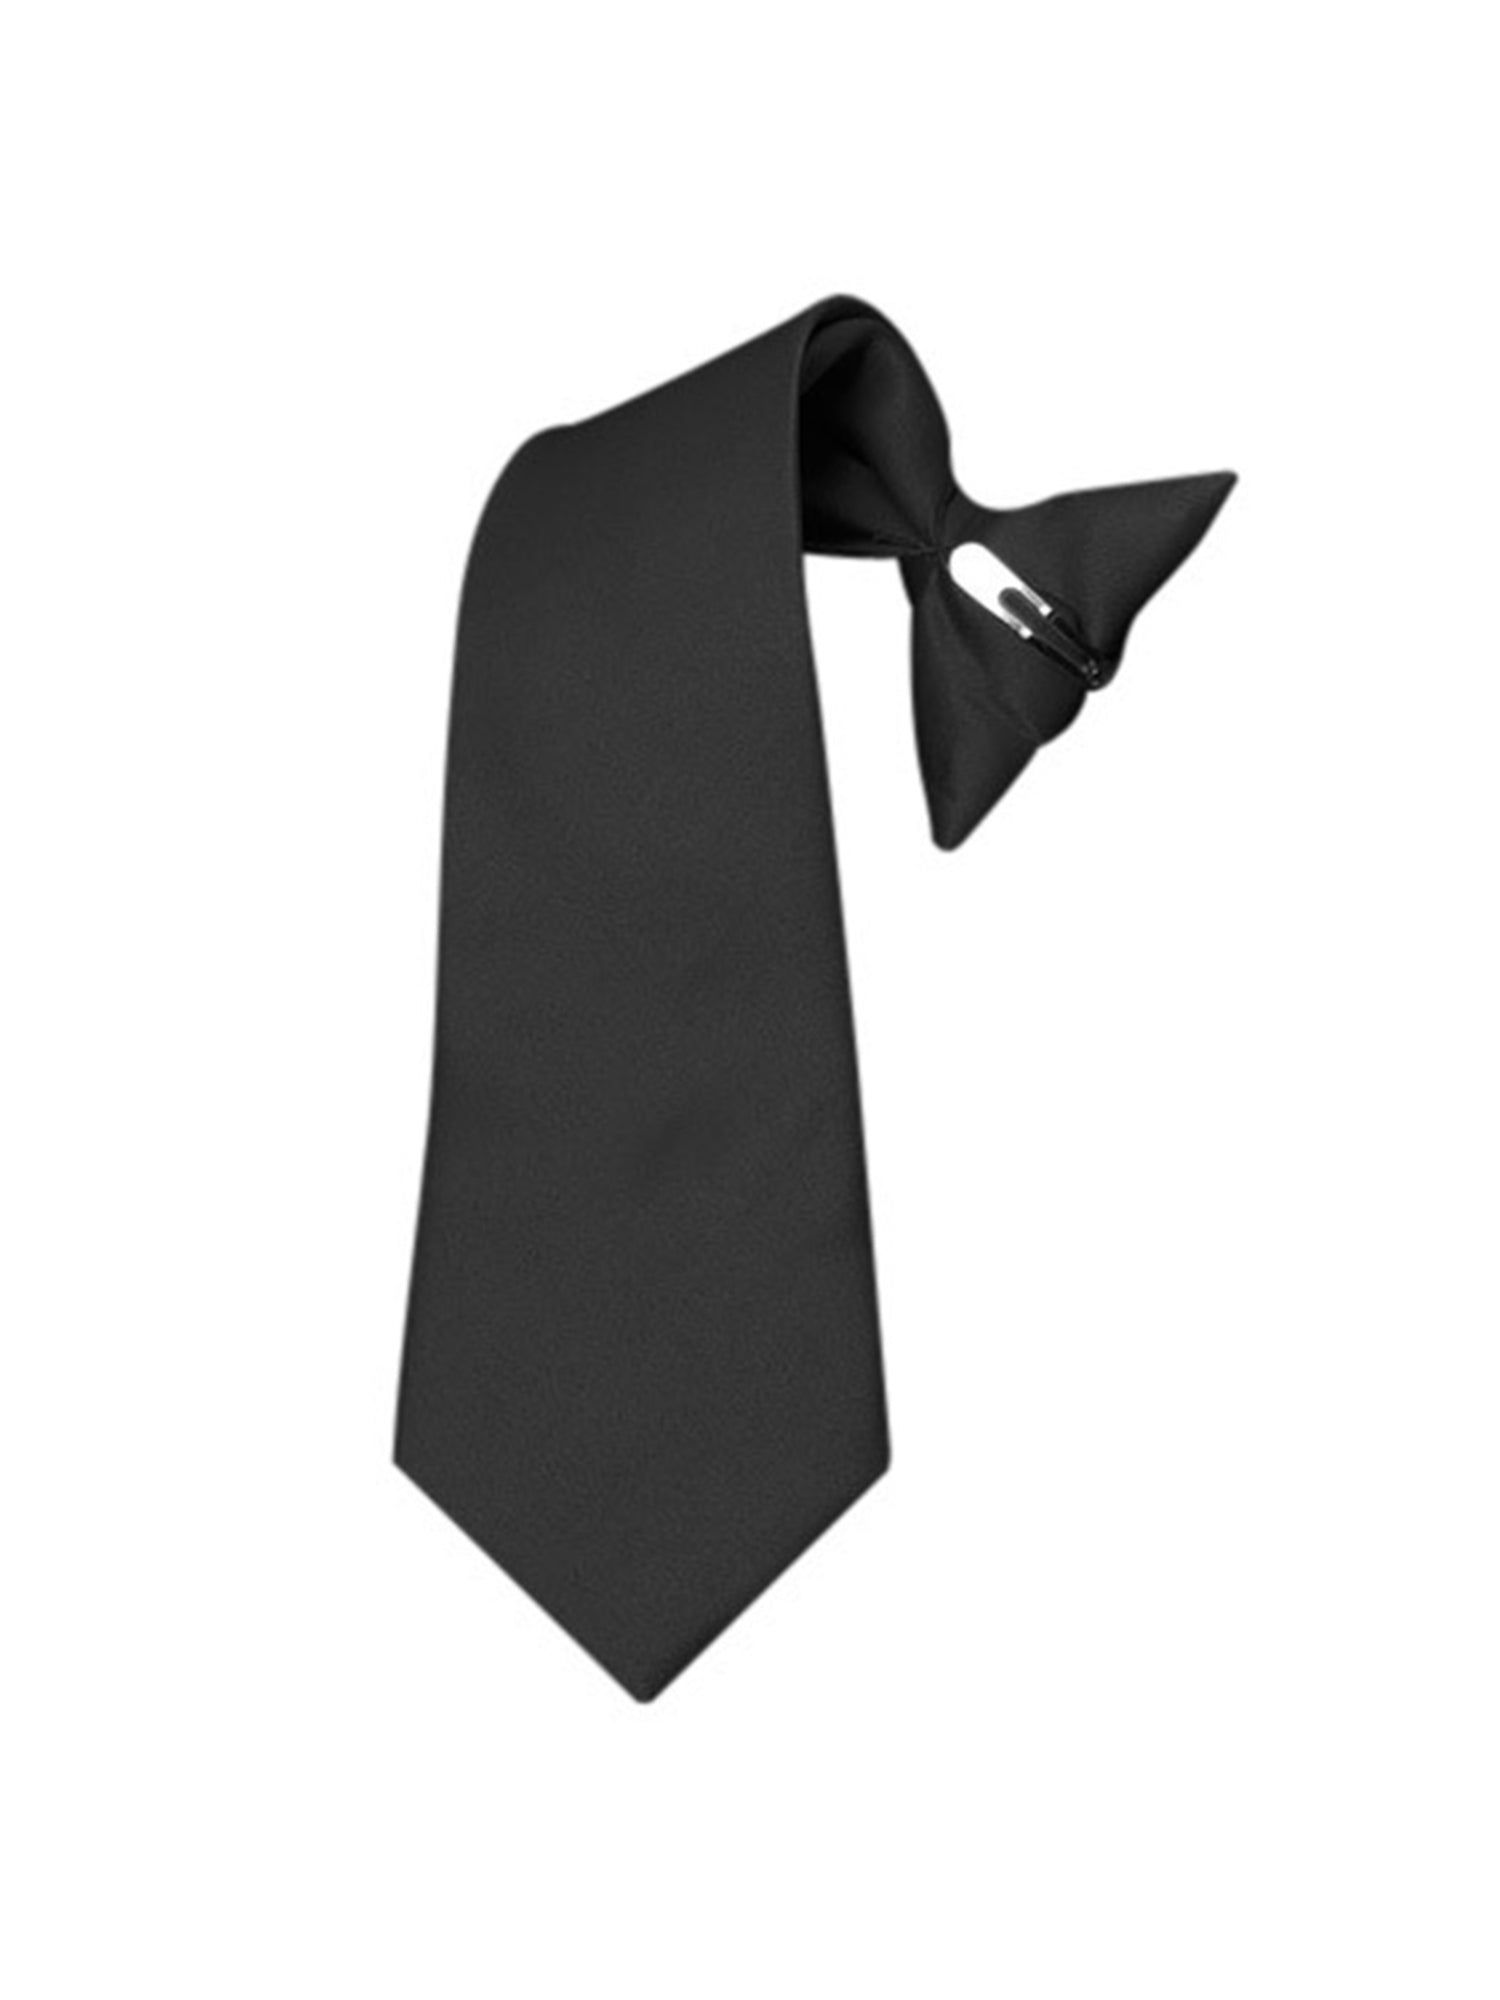 Boy's Solid Color Pre-tied Clip On Neck Tie Neck Tie TheDapperTie Black 8" x 2.5" 